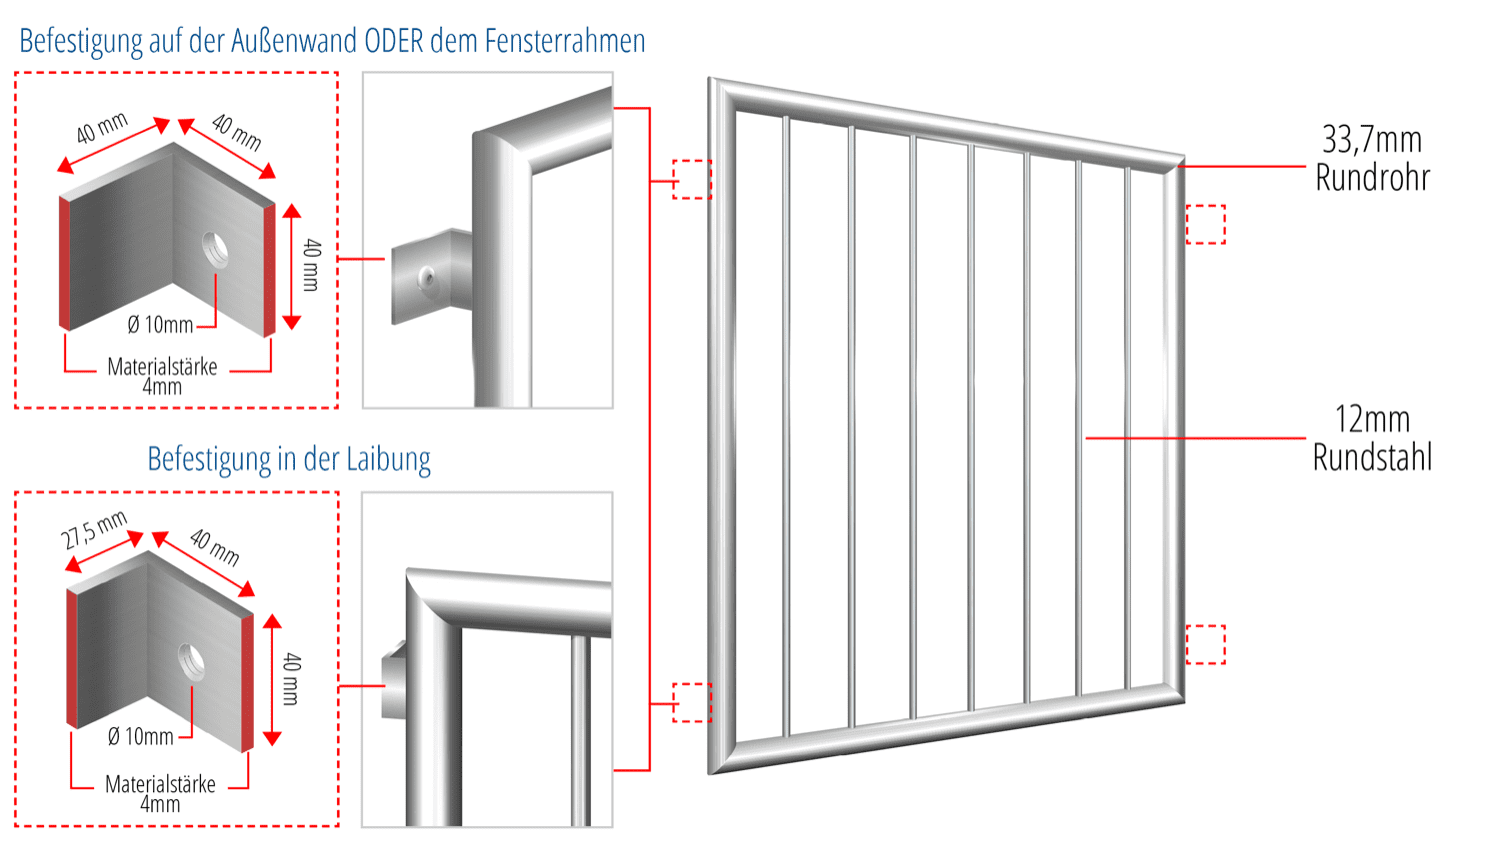 Grille de défense pour fenêtres en acier inoxydable à barre verticale 1